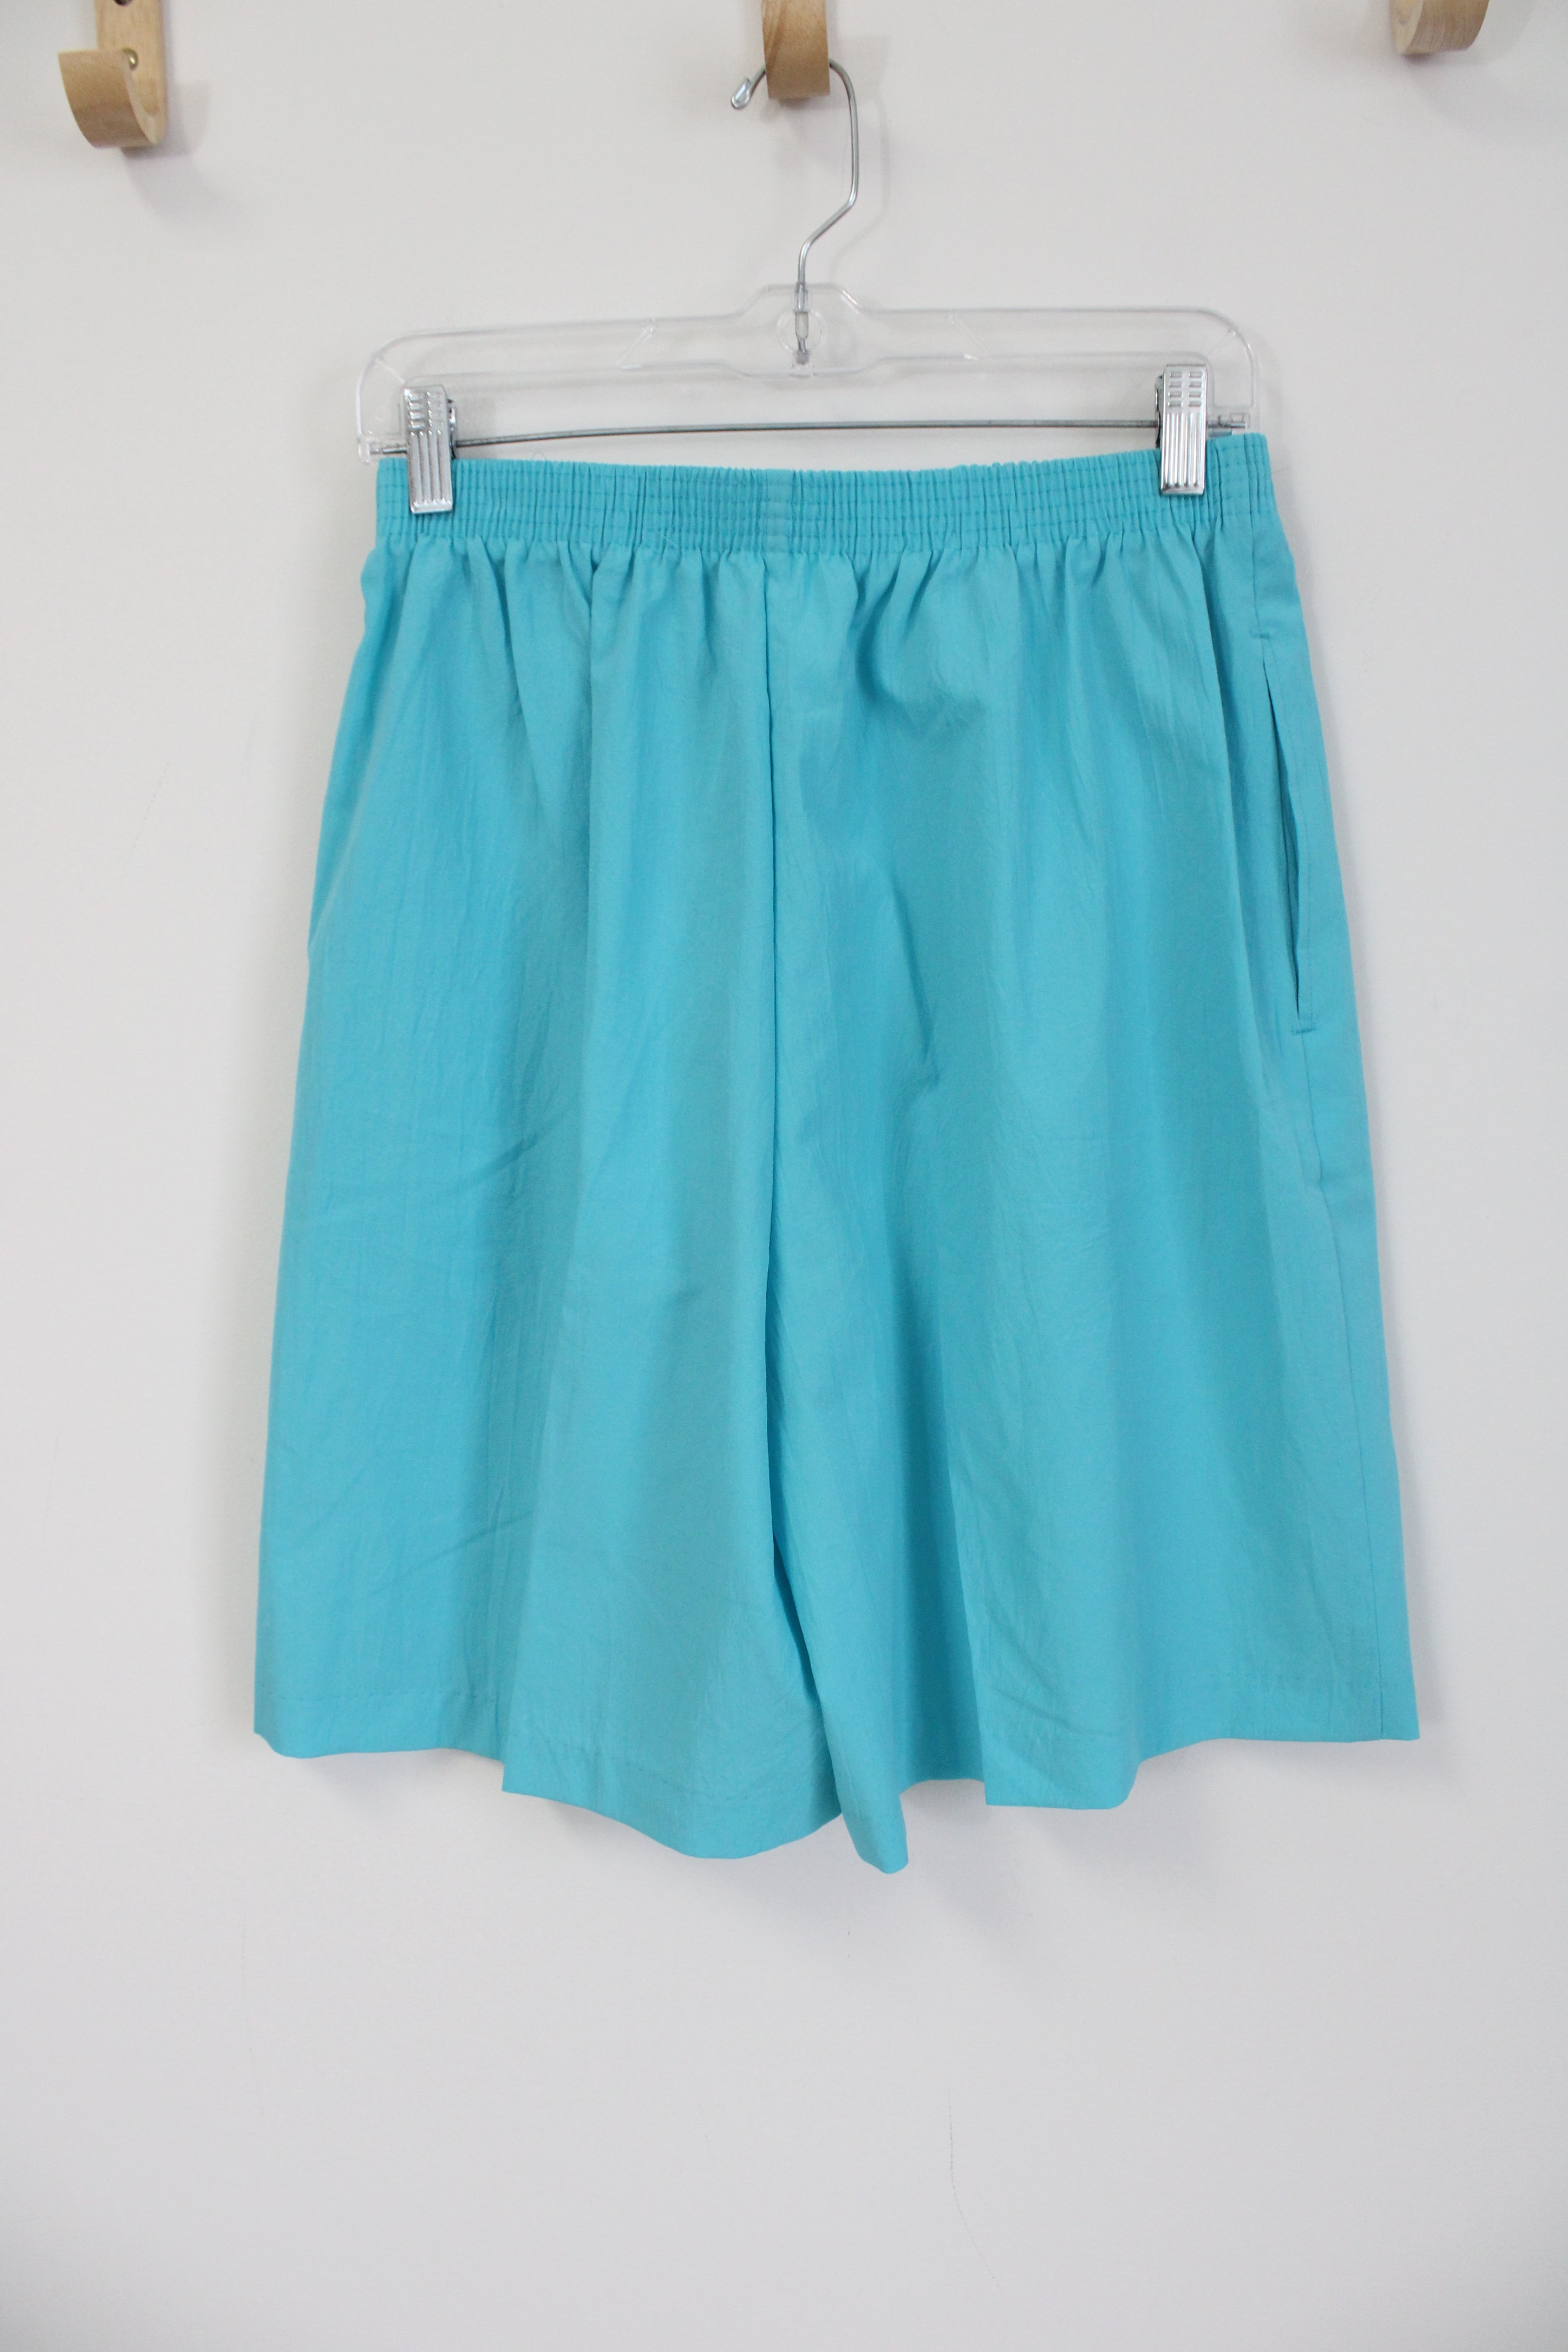 NEW Bonworth Turquoise Blue Polyester Shorts | M